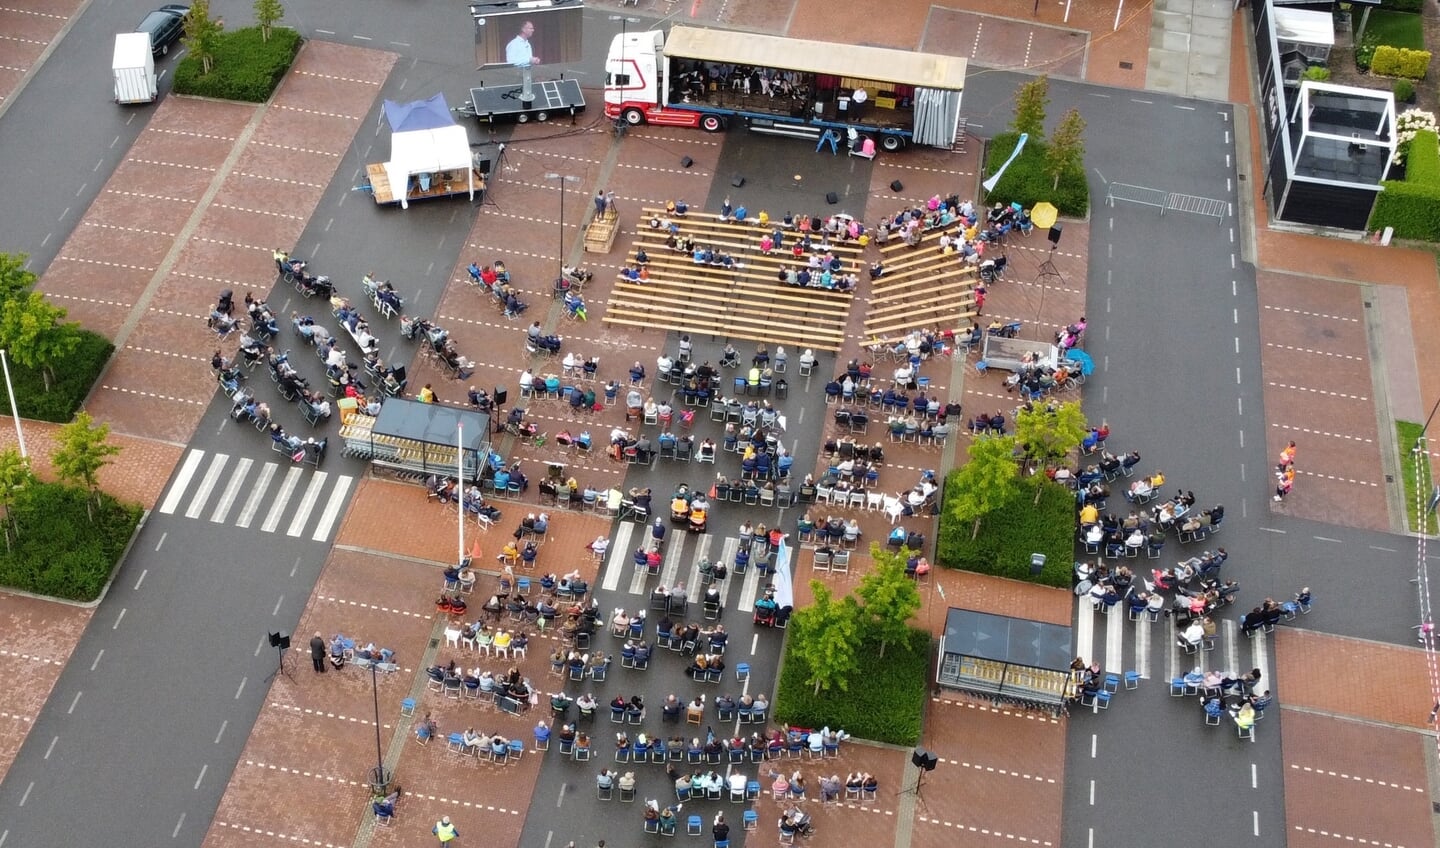 De openlucht bijeenkomst wordt gehouden op het parkeerterrein van winkelcentrum Timmer te Lienden